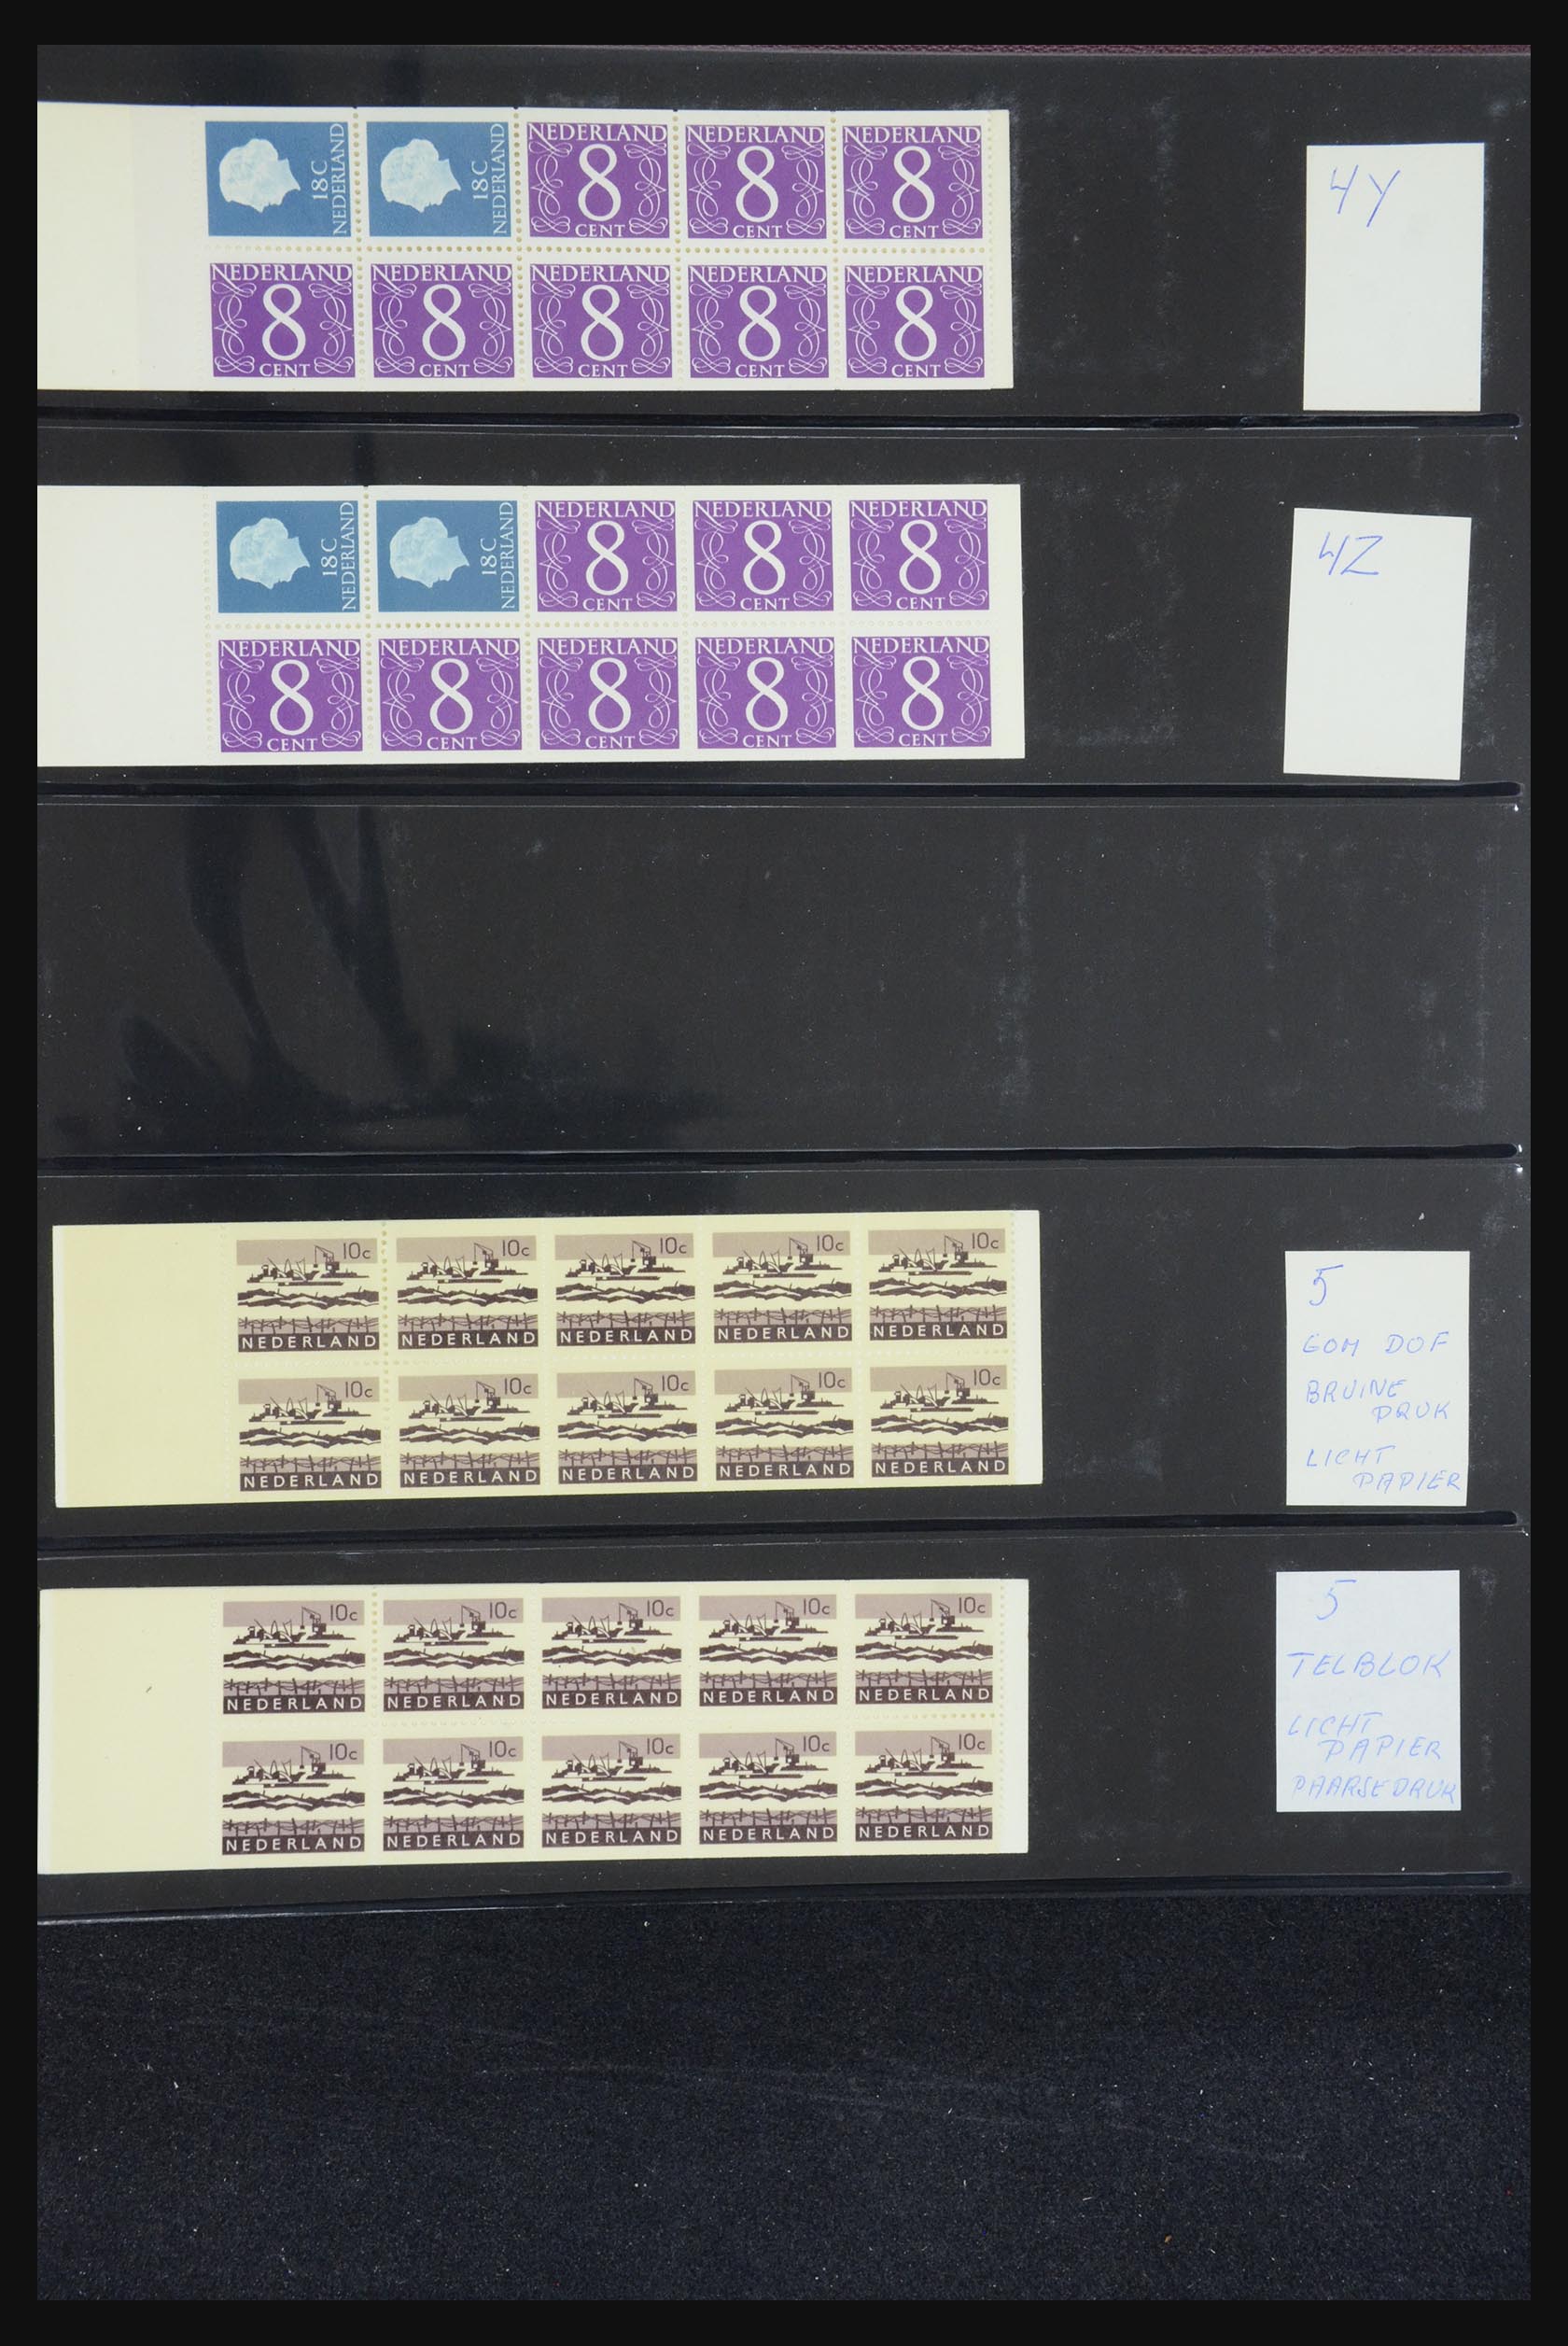 32407 004 - 32407 Netherlands stamp booklets 1964-2003.